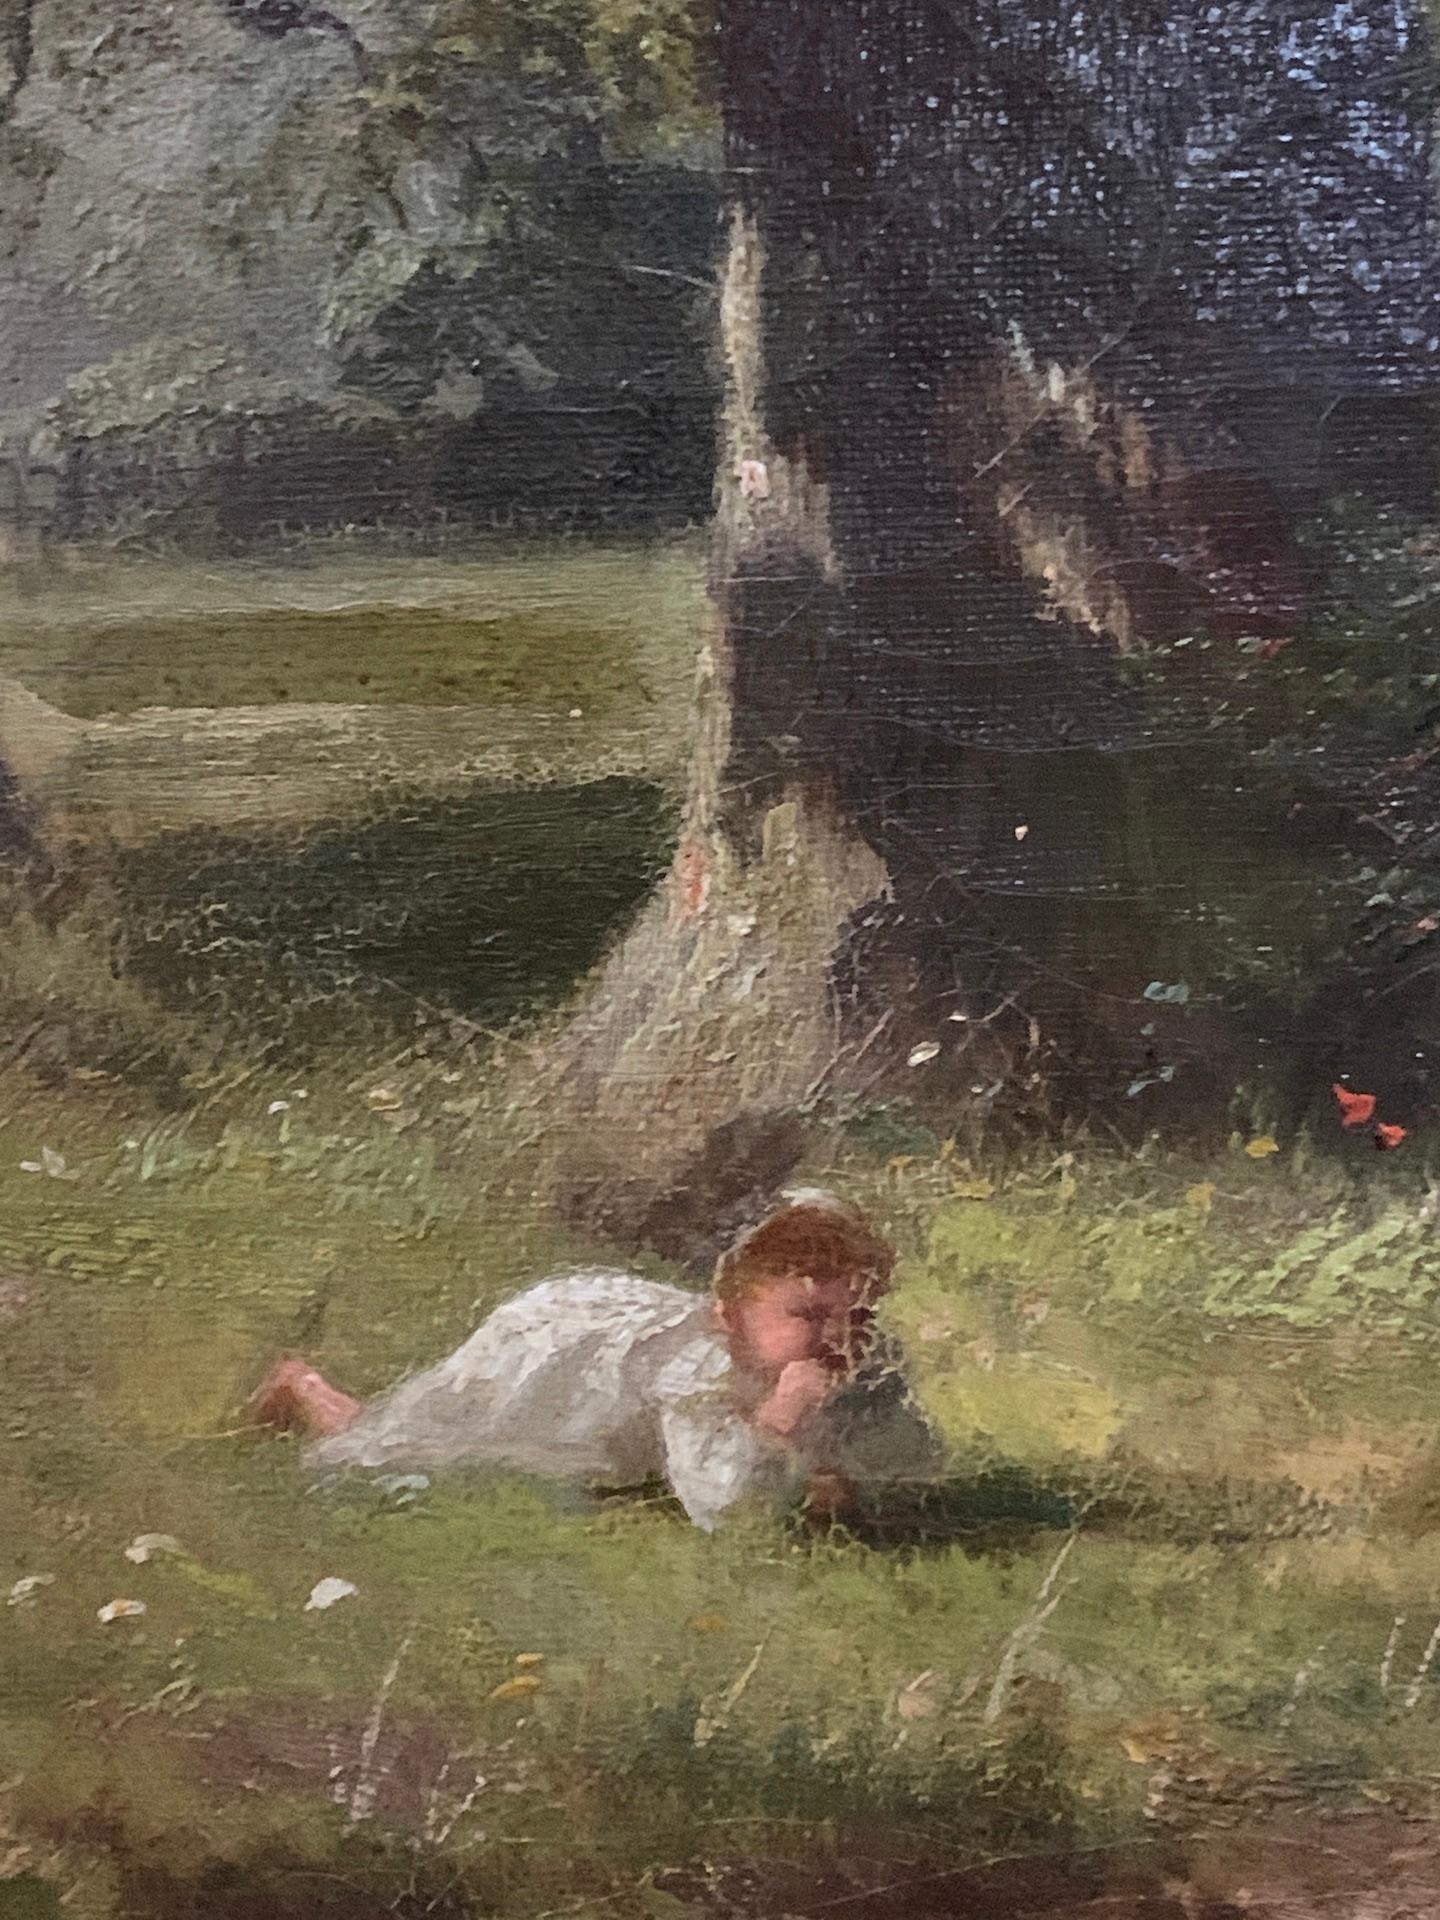 Alfred Banner war ein englischer Landschafts- und Figurenmaler. 

Er arbeitete oft in einem spätviktorianischen Stil, wobei seine Kompositionen junge Kinder darstellen, die sich an der schönen englischen Landschaft erfreuen.

Dieses Stück ist auf